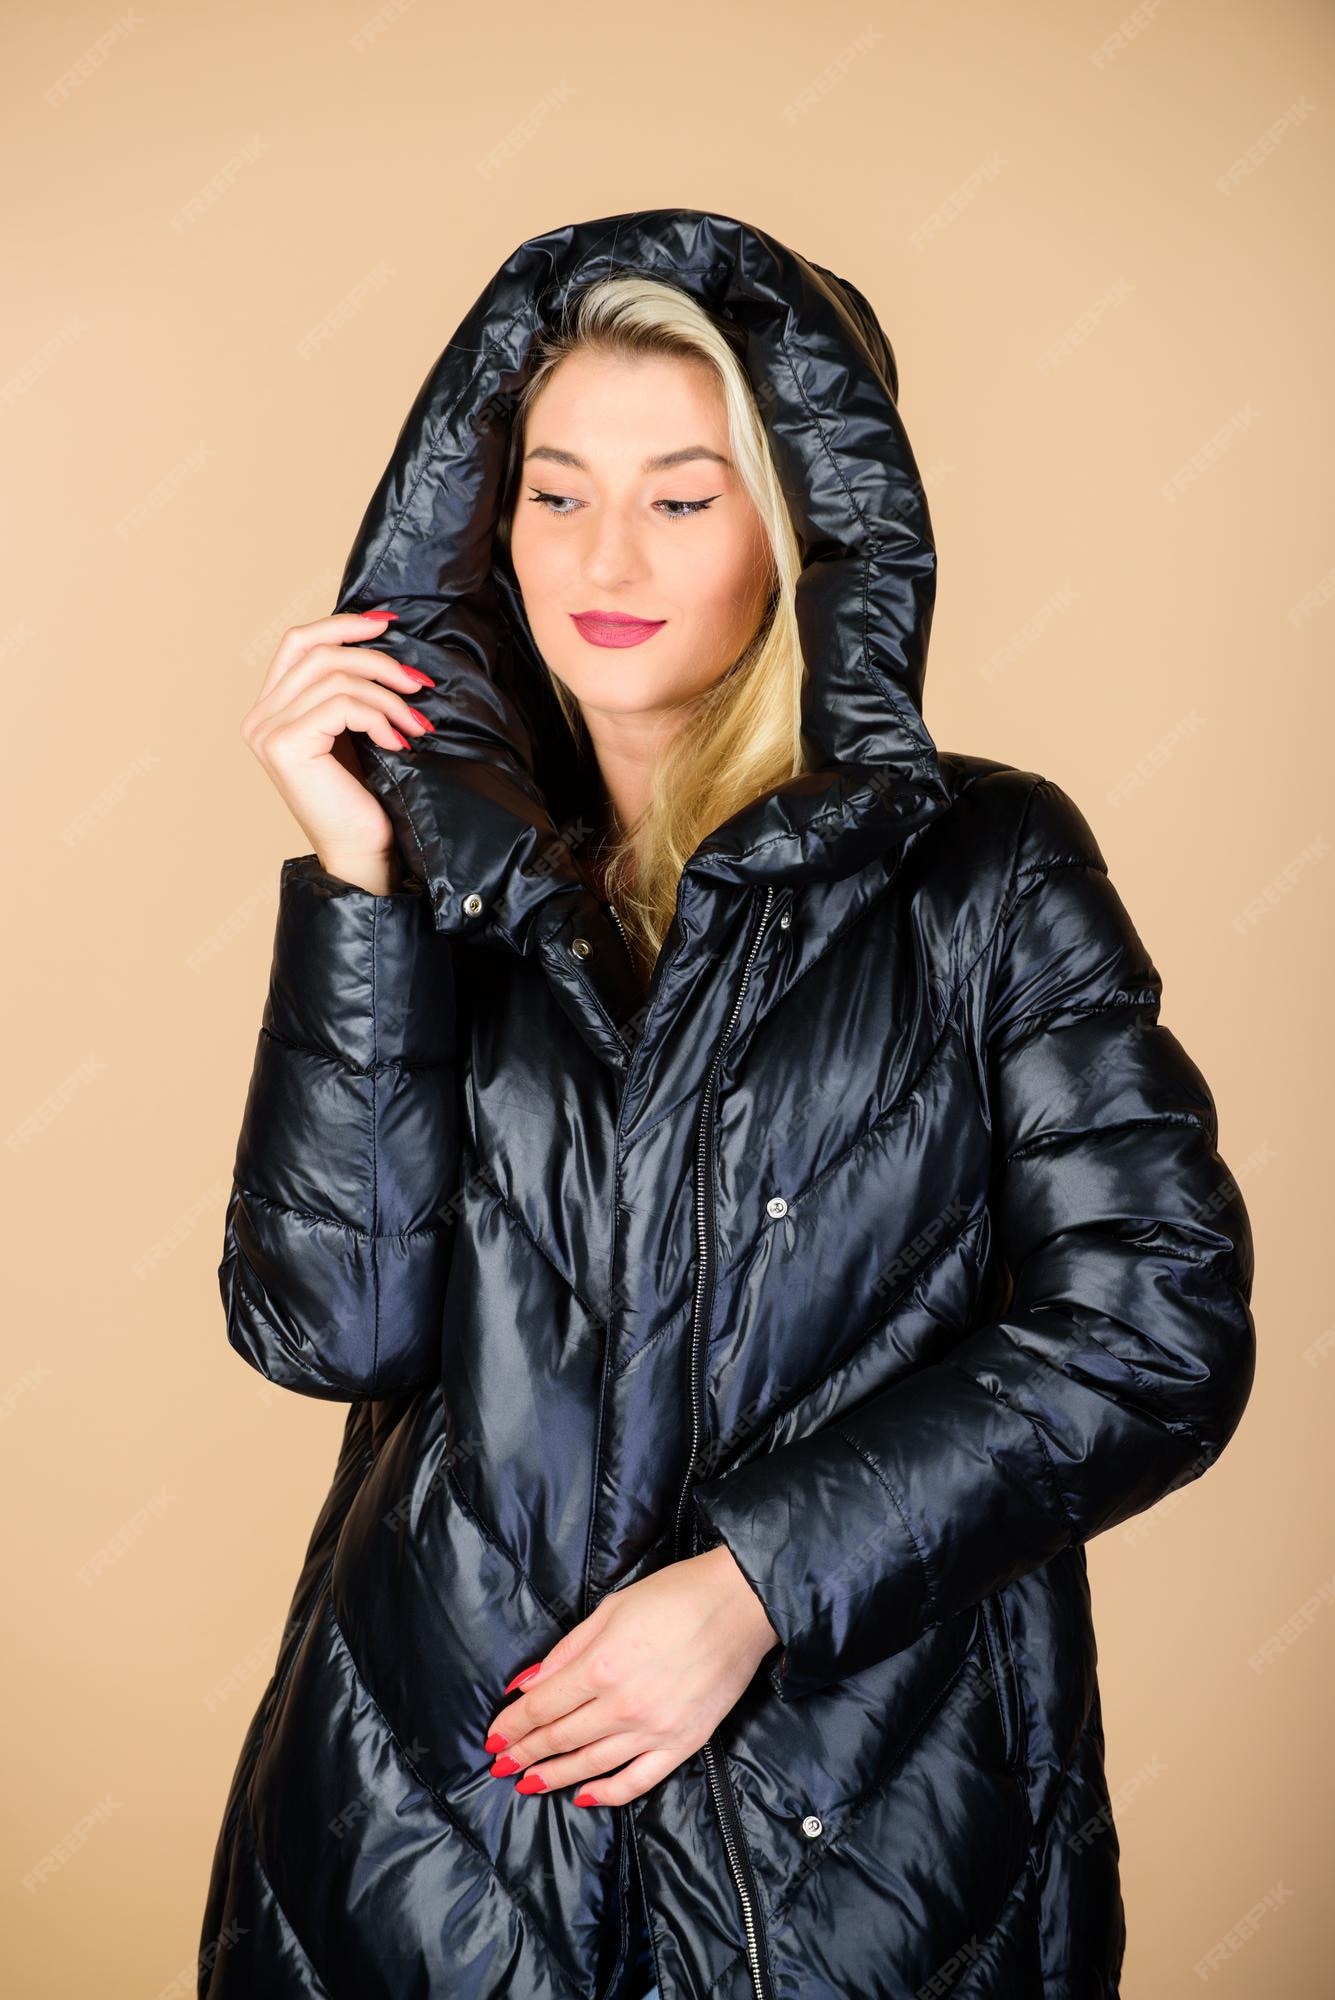 De vuelta en negro preciosa rubia a la moda chica disfruta vistiendo una chaqueta con capucha abrigo cálido cómoda chaqueta de plumas encontrar la chaqueta de invierno adecuada es esencial para